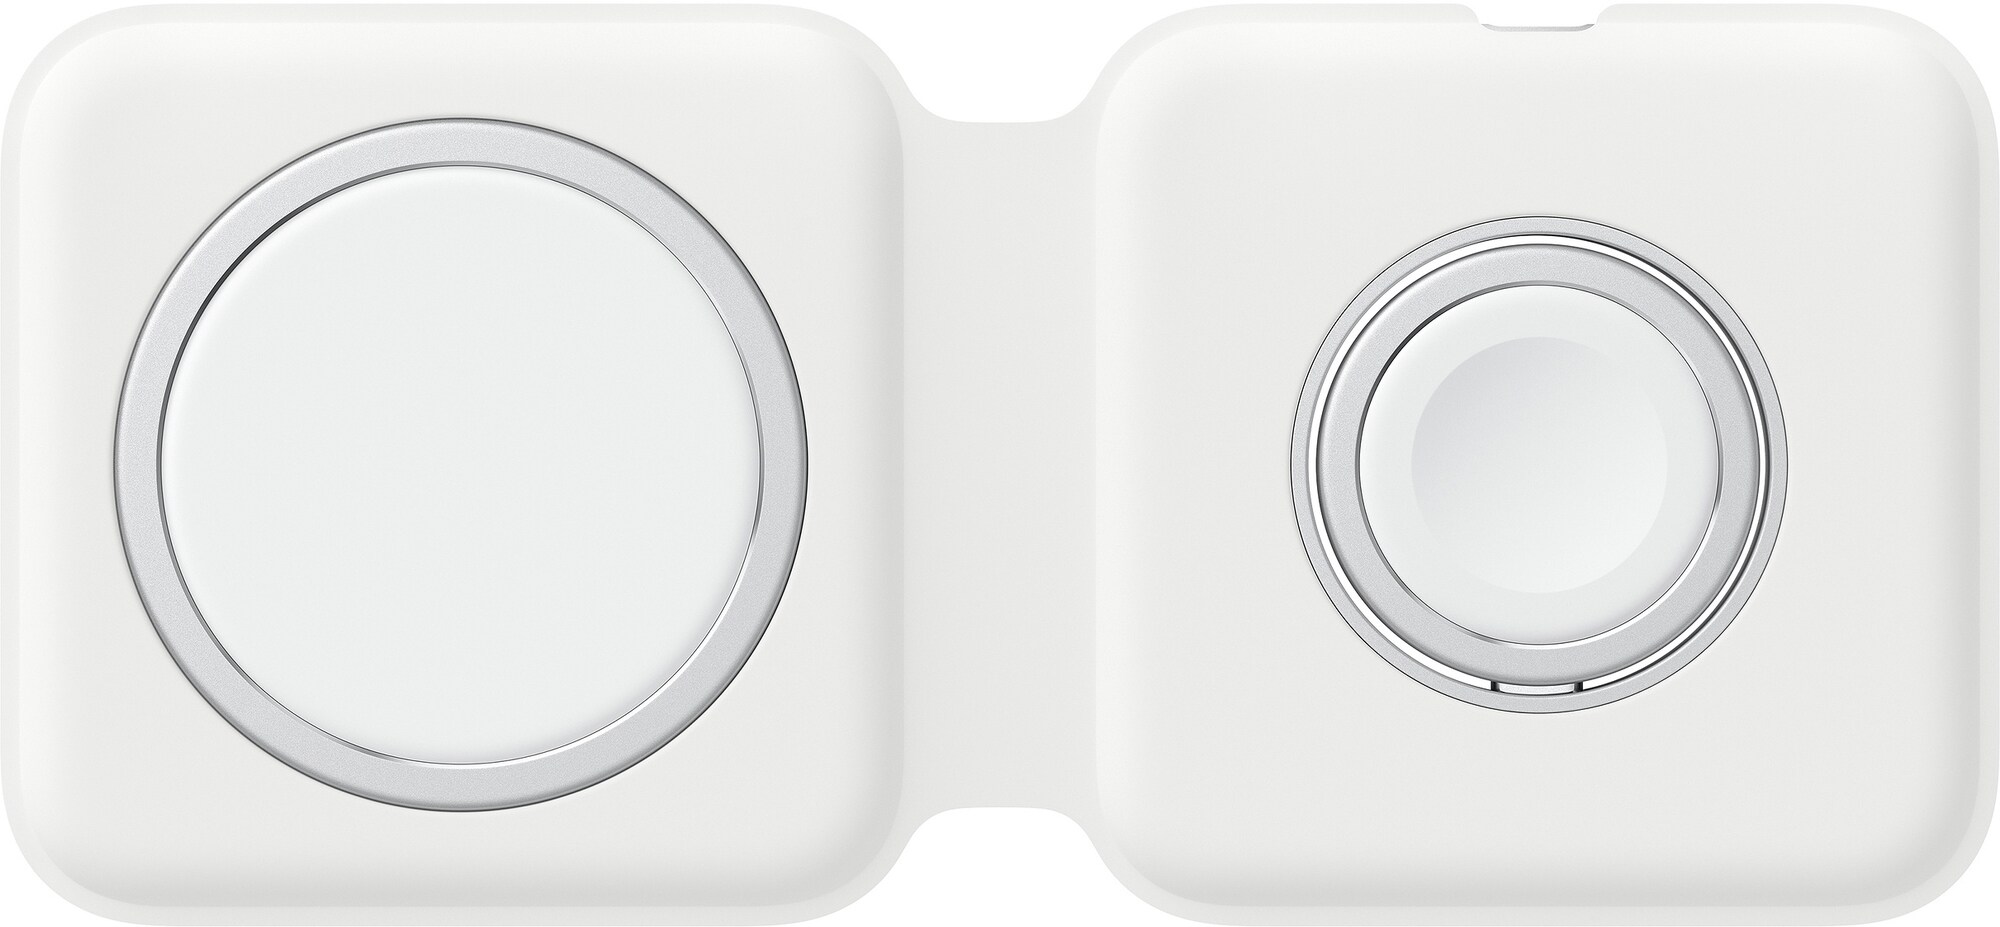 Apple MagSafe duo trådløs lader (hvit) - Trådløs lader til mobil - Elkjøp